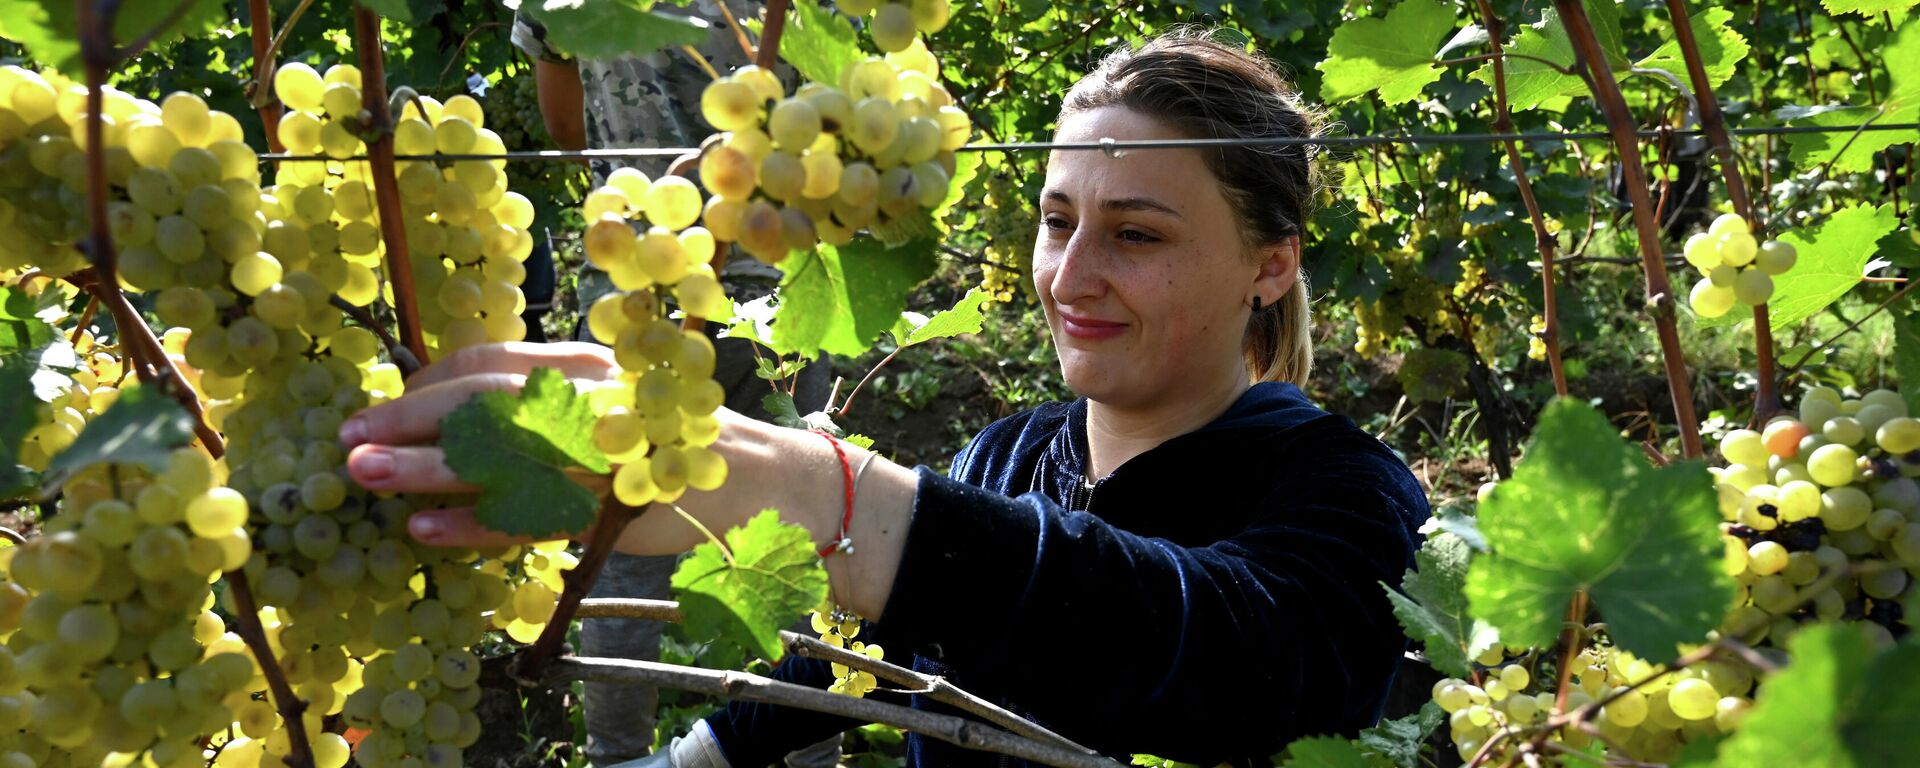 Сбор урожая винограда - ртвели 2021 в Кахети - Sputnik Грузия, 1920, 21.09.2021